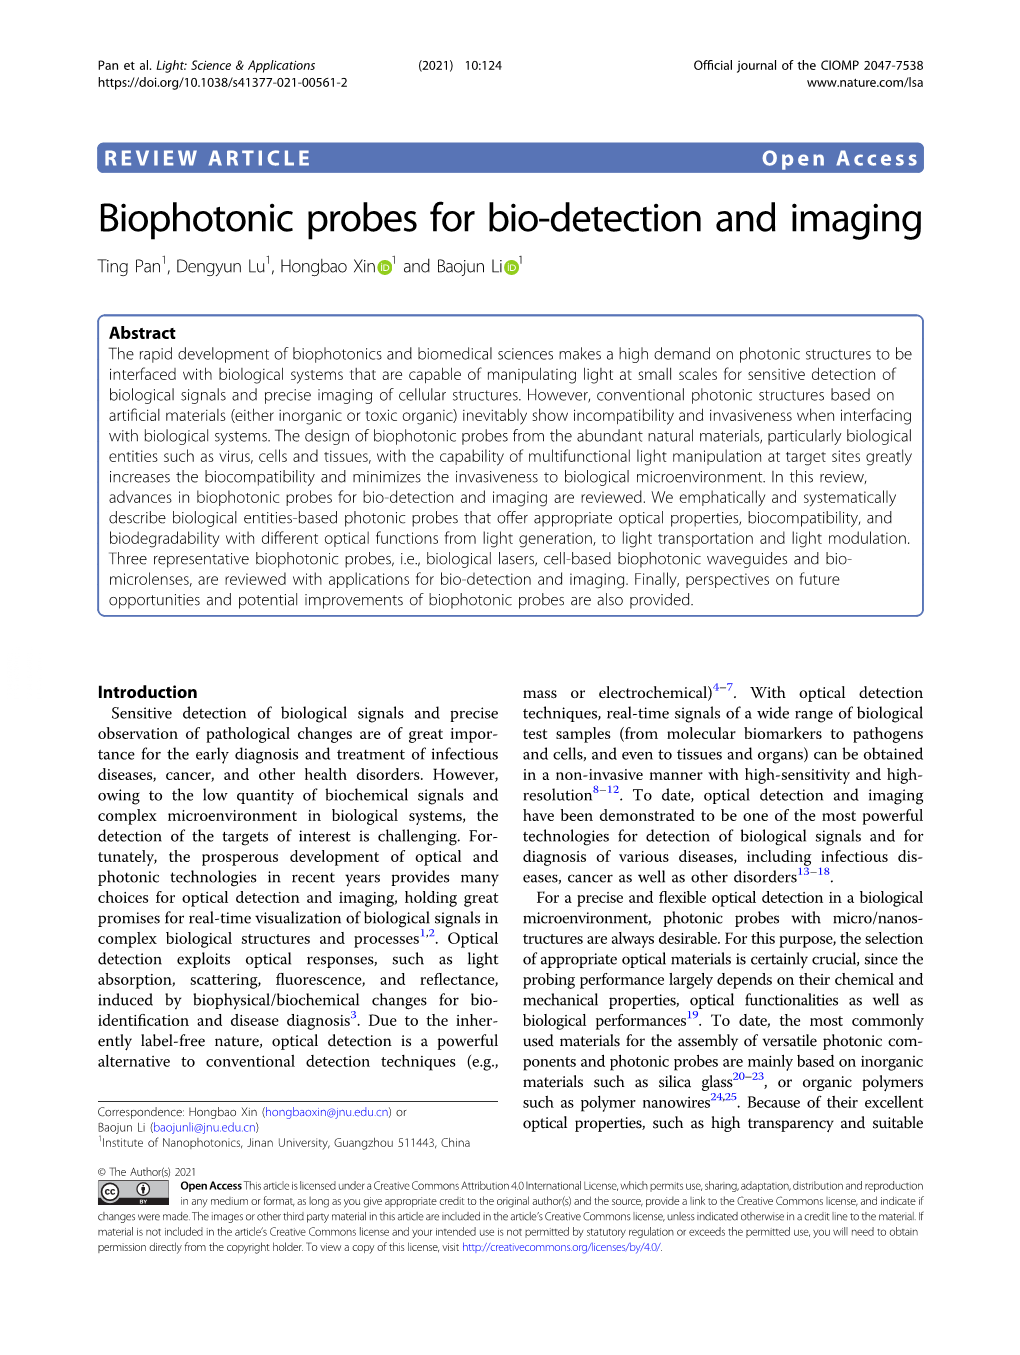 Biophotonic Probes for Bio-Detection and Imaging Ting Pan1,Dengyunlu1, Hongbao Xin 1 and Baojun Li 1